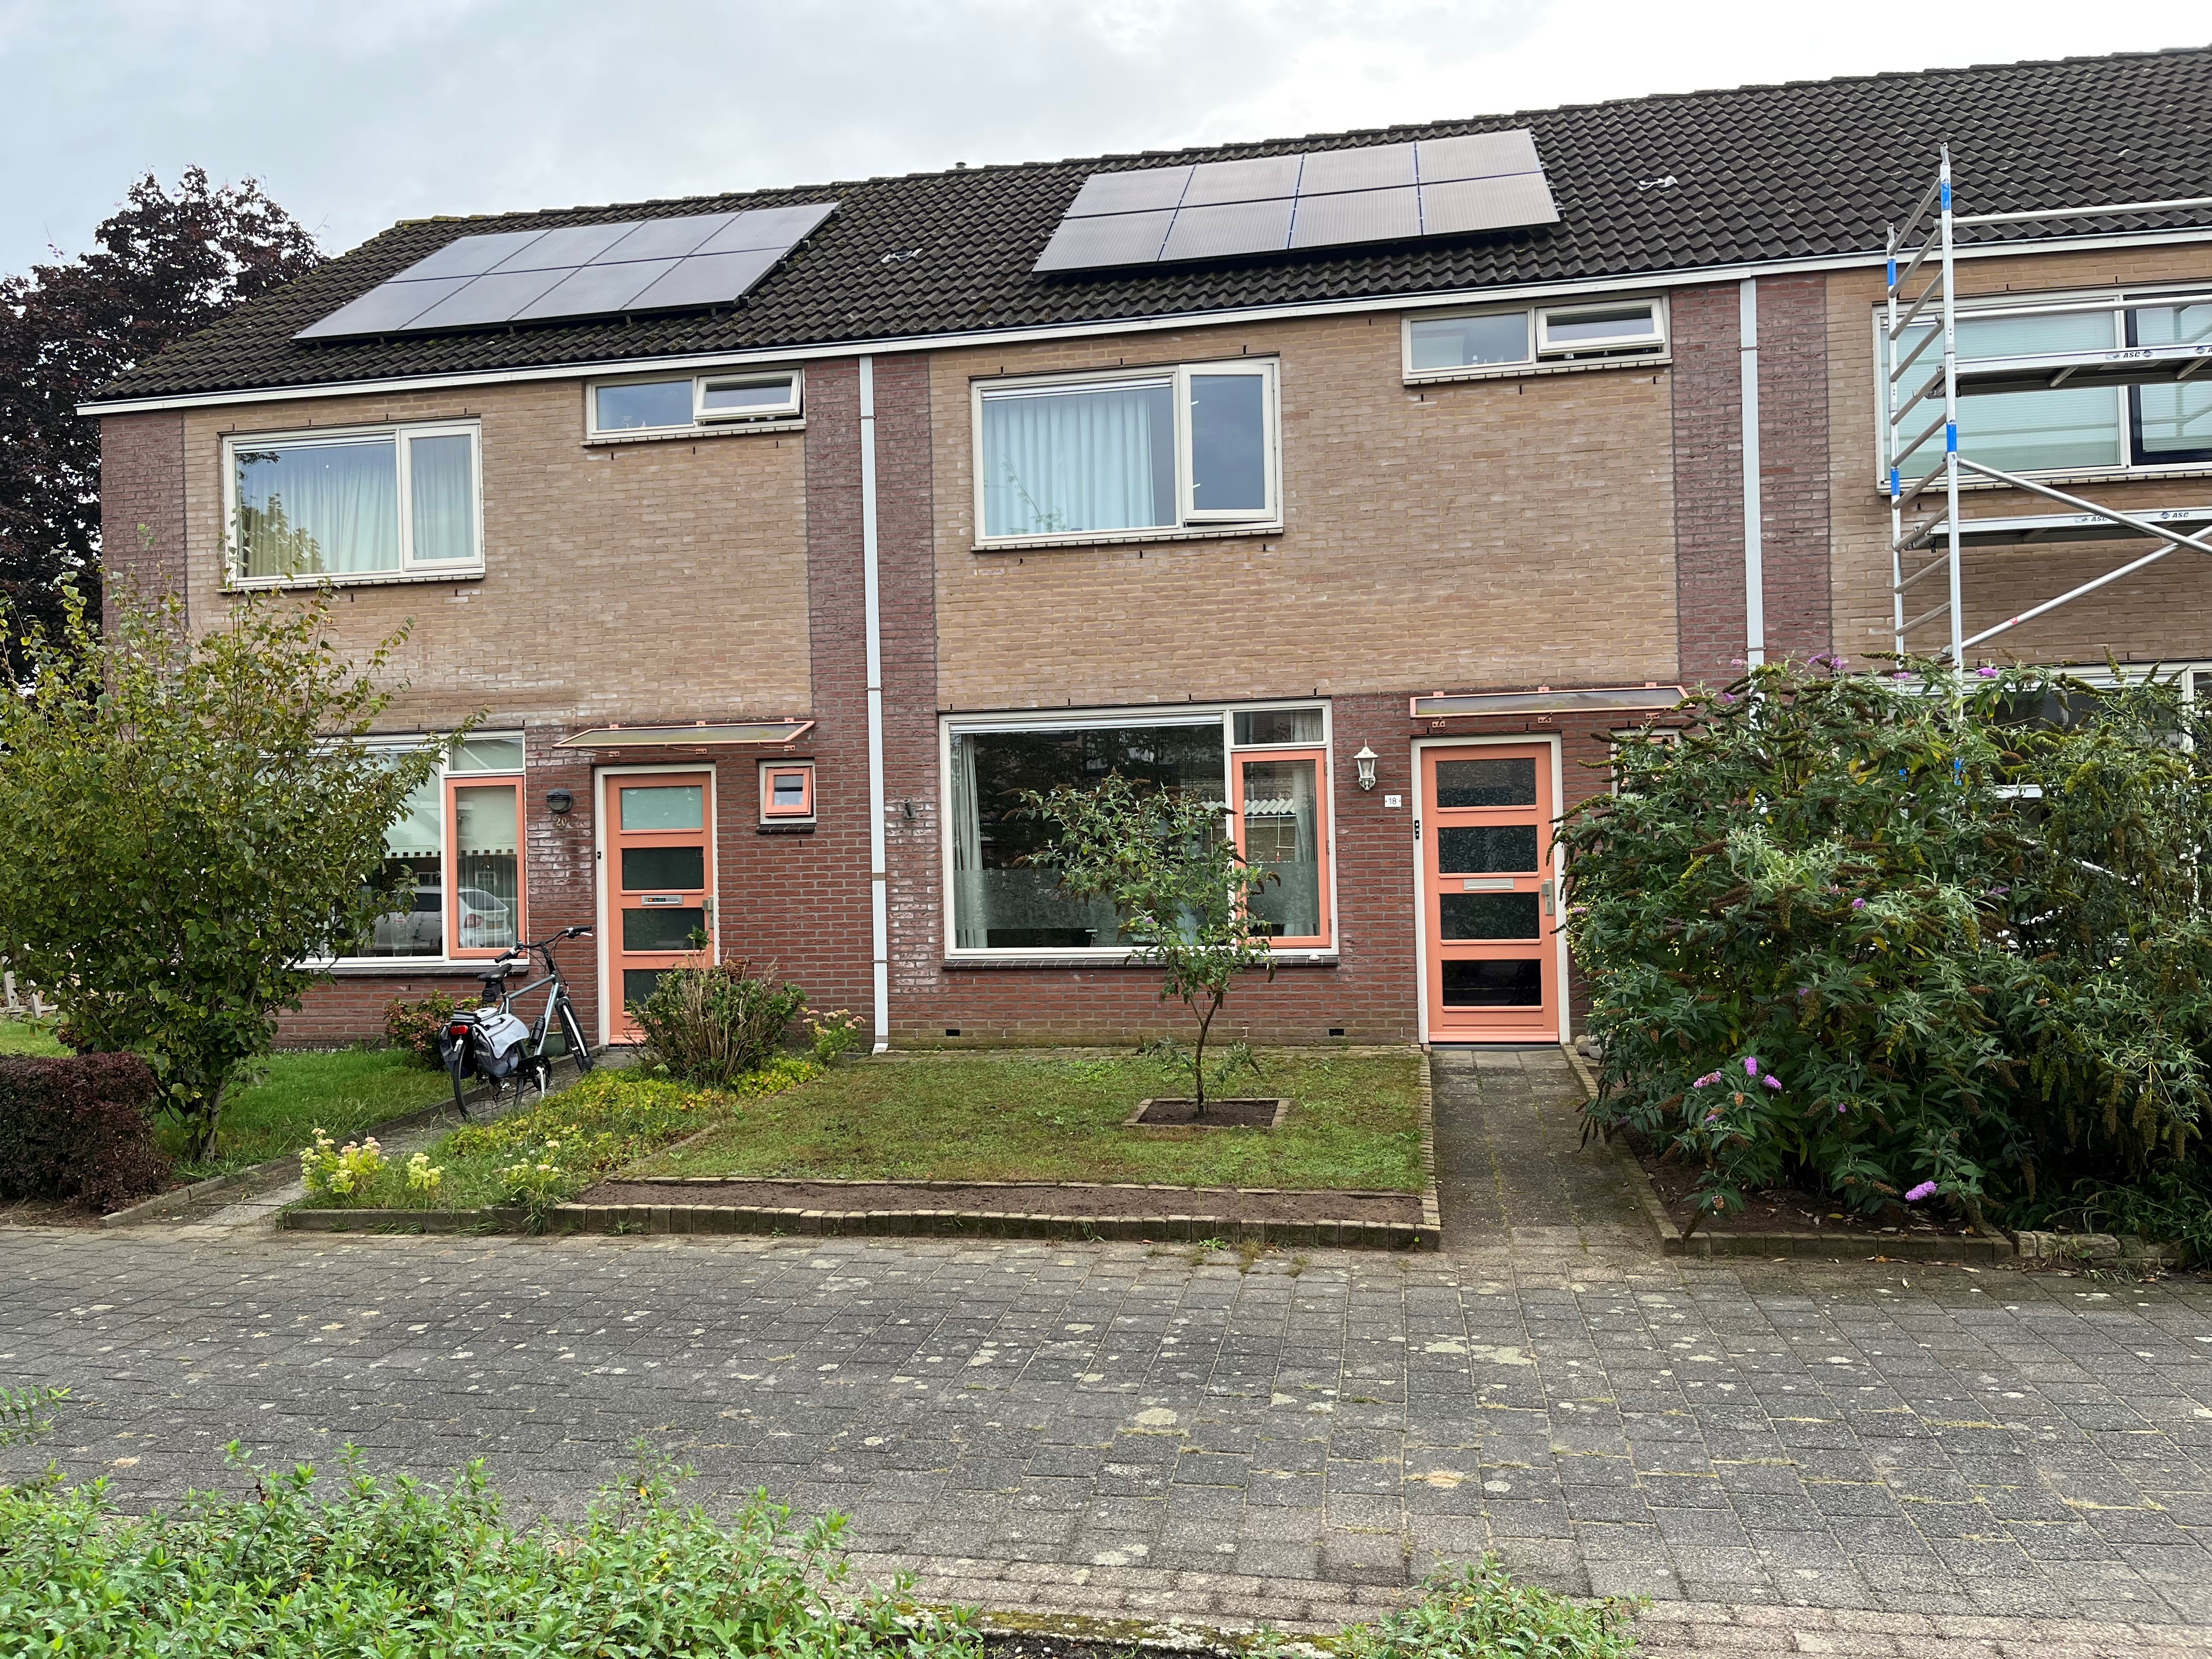 Jalinkhof 18, 7721 EB Dalfsen, Nederland